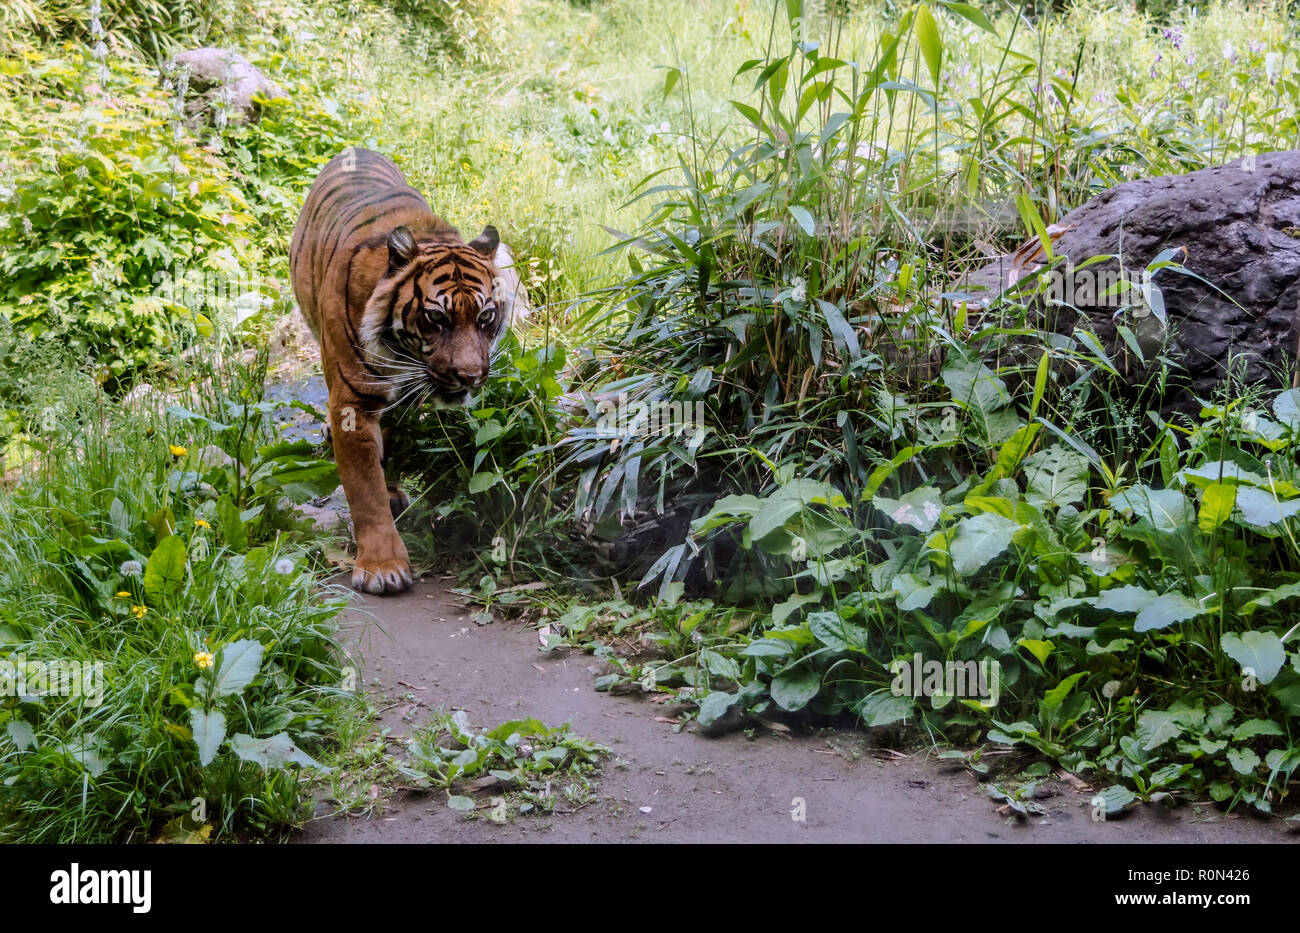 La tigre di Sumatra (Panthera tigris sondaica) percorrendo a piedi il sentiero nel bosco. Le tigri sono principalmente rapaci diurni. Foto Stock